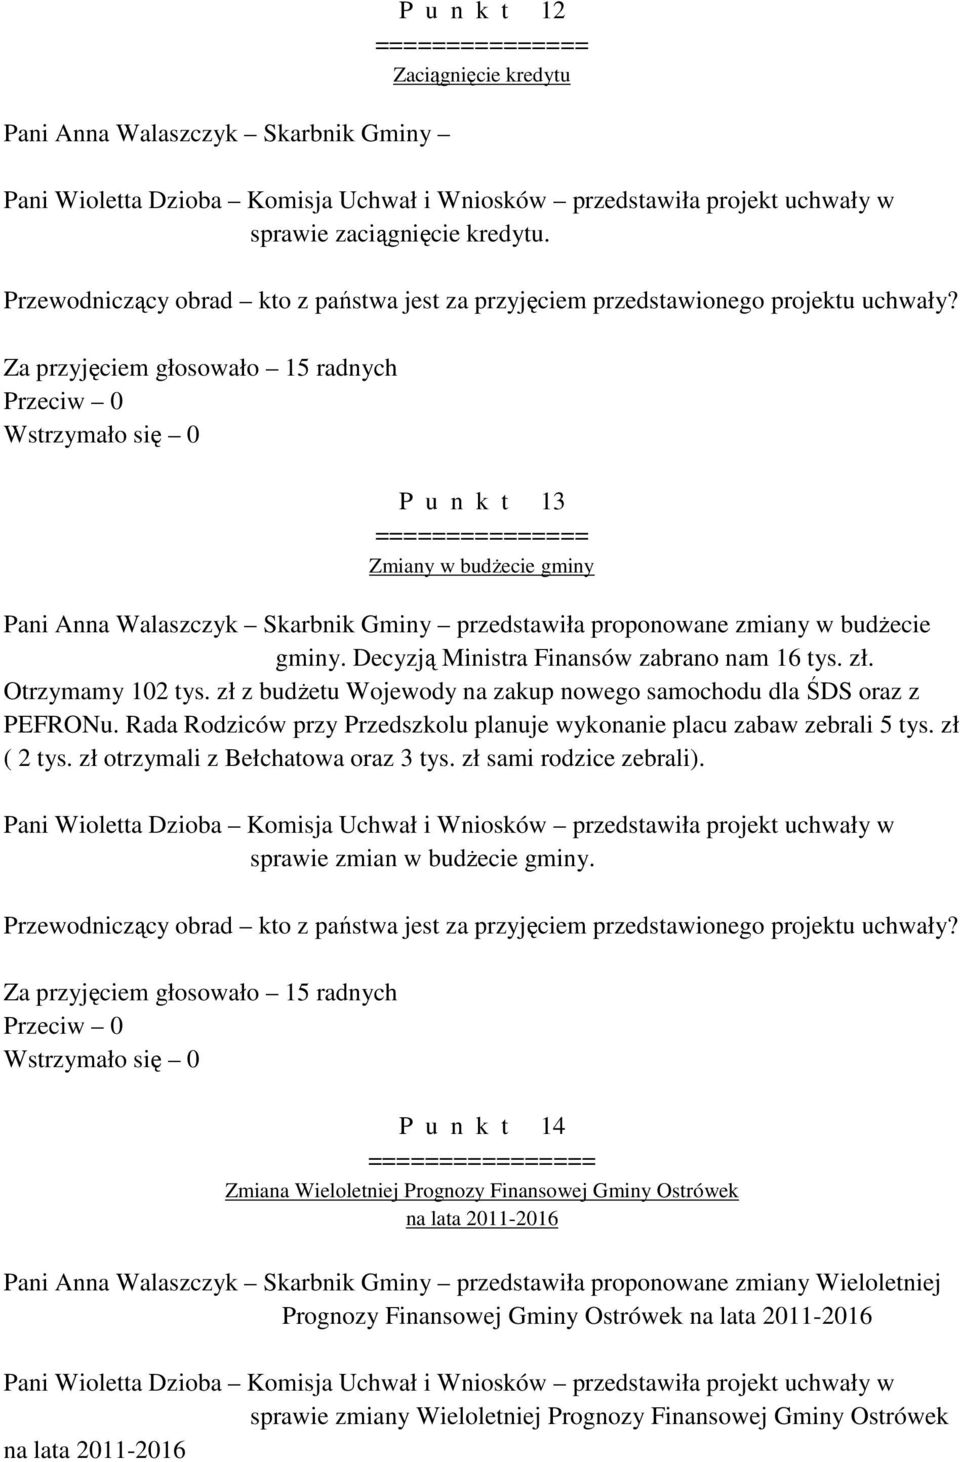 Za przyjęciem głosowało 15 radnych P u n k t 13 =============== Zmiany w budżecie gminy Pani Anna Walaszczyk Skarbnik Gminy przedstawiła proponowane zmiany w budżecie gminy.